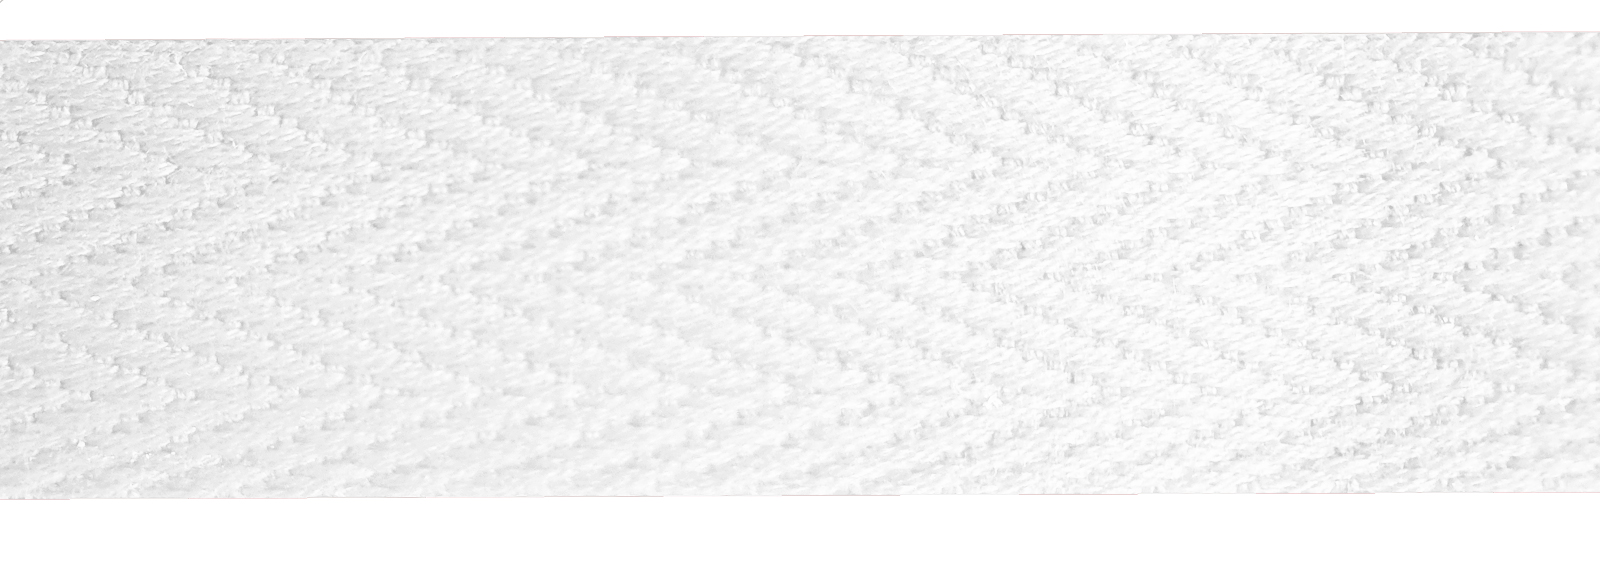 Baumwollband 10 mm weiß, Meterware